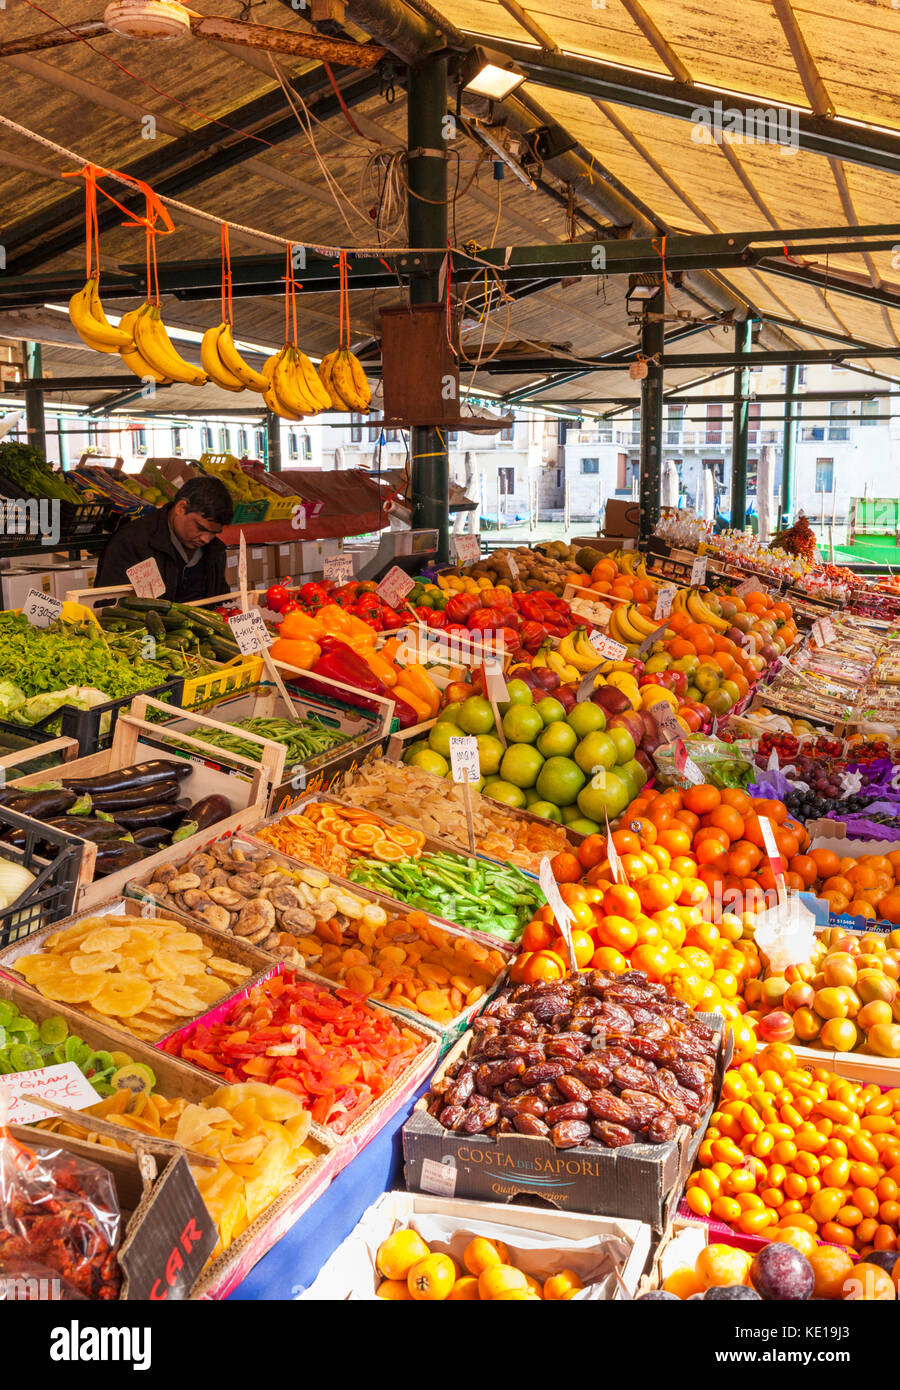 Venise ITALIE VENISE Les gens d'acheter des fruits et légumes du marché, les étals de produits frais au marché du Rialto Venise Italie Europe de l'UE Banque D'Images